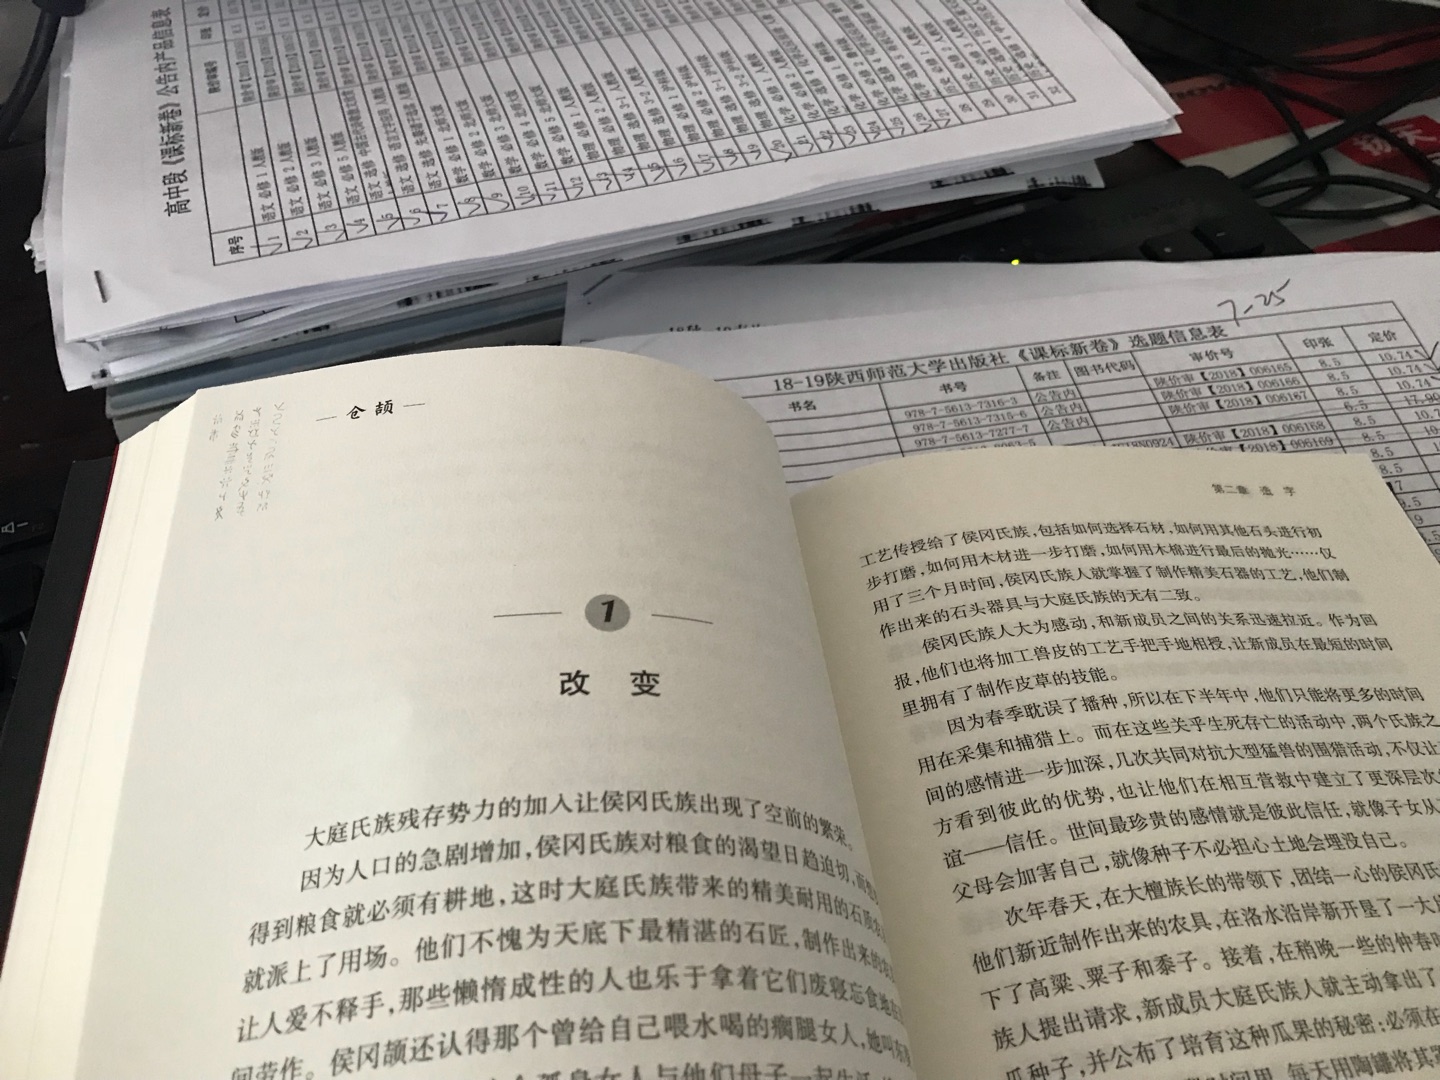 文笔老练，大家风范。仓颉不止是传说。作者用优美的文字，严谨的情节，再现了宏伟壮观的中国汉字起源。